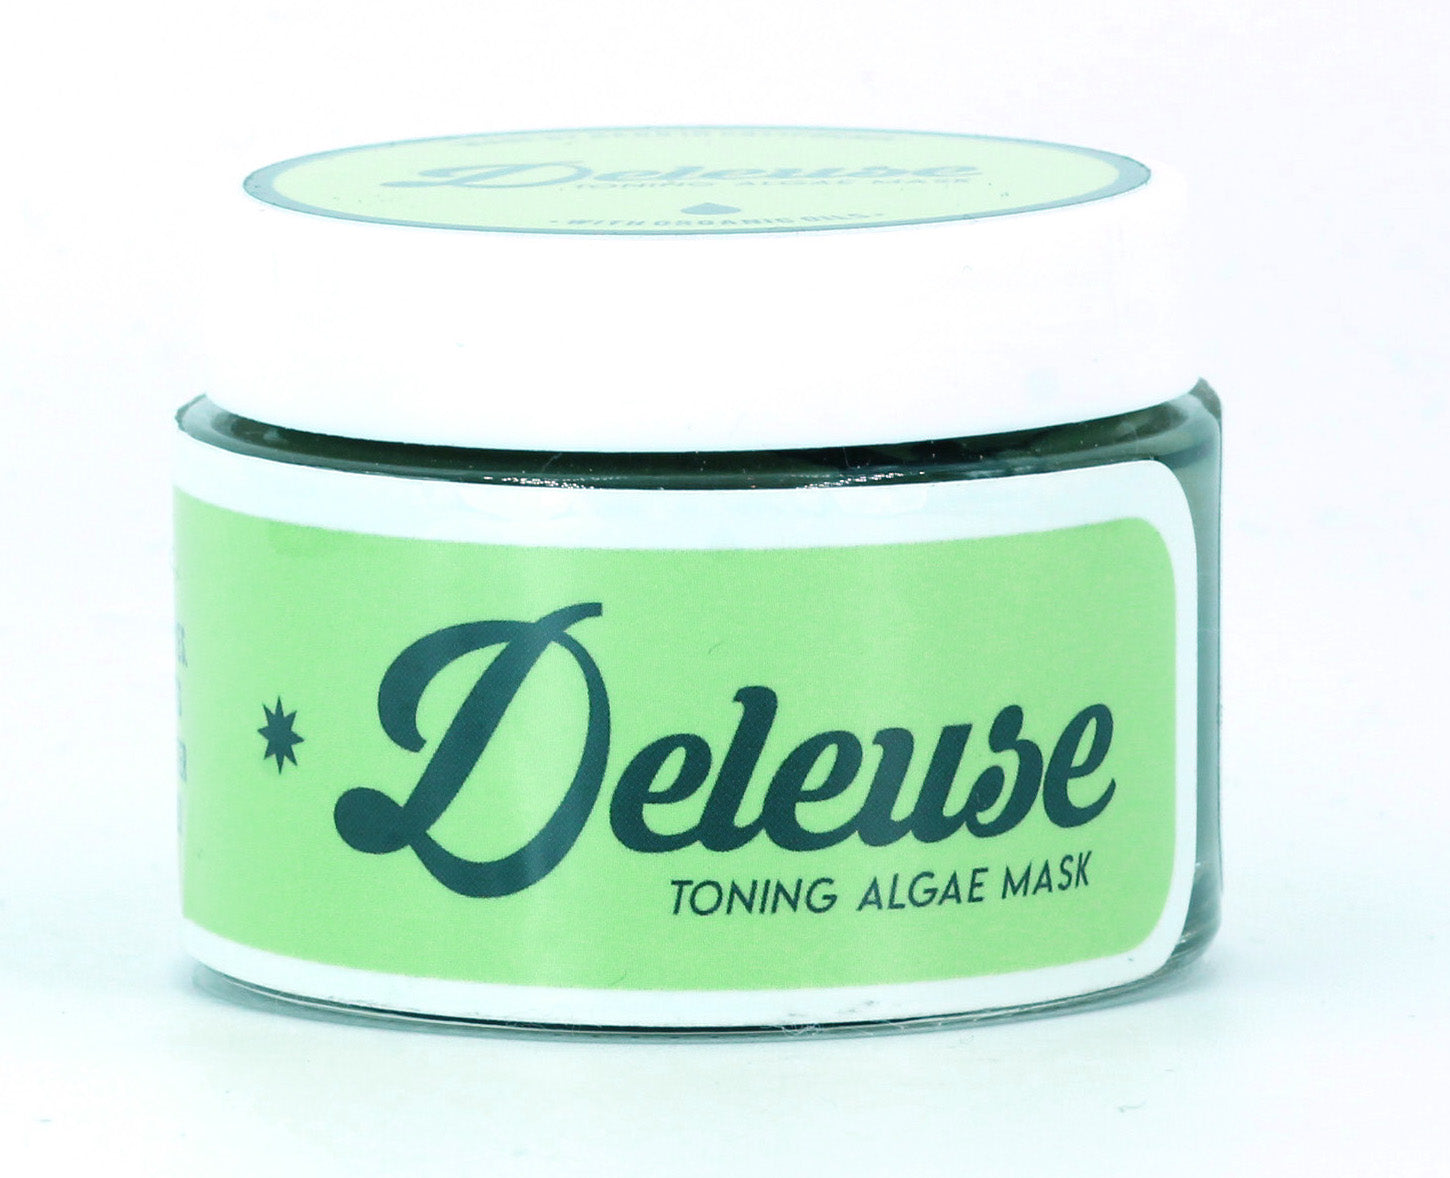 Algae Toning and Detoxifying Mask